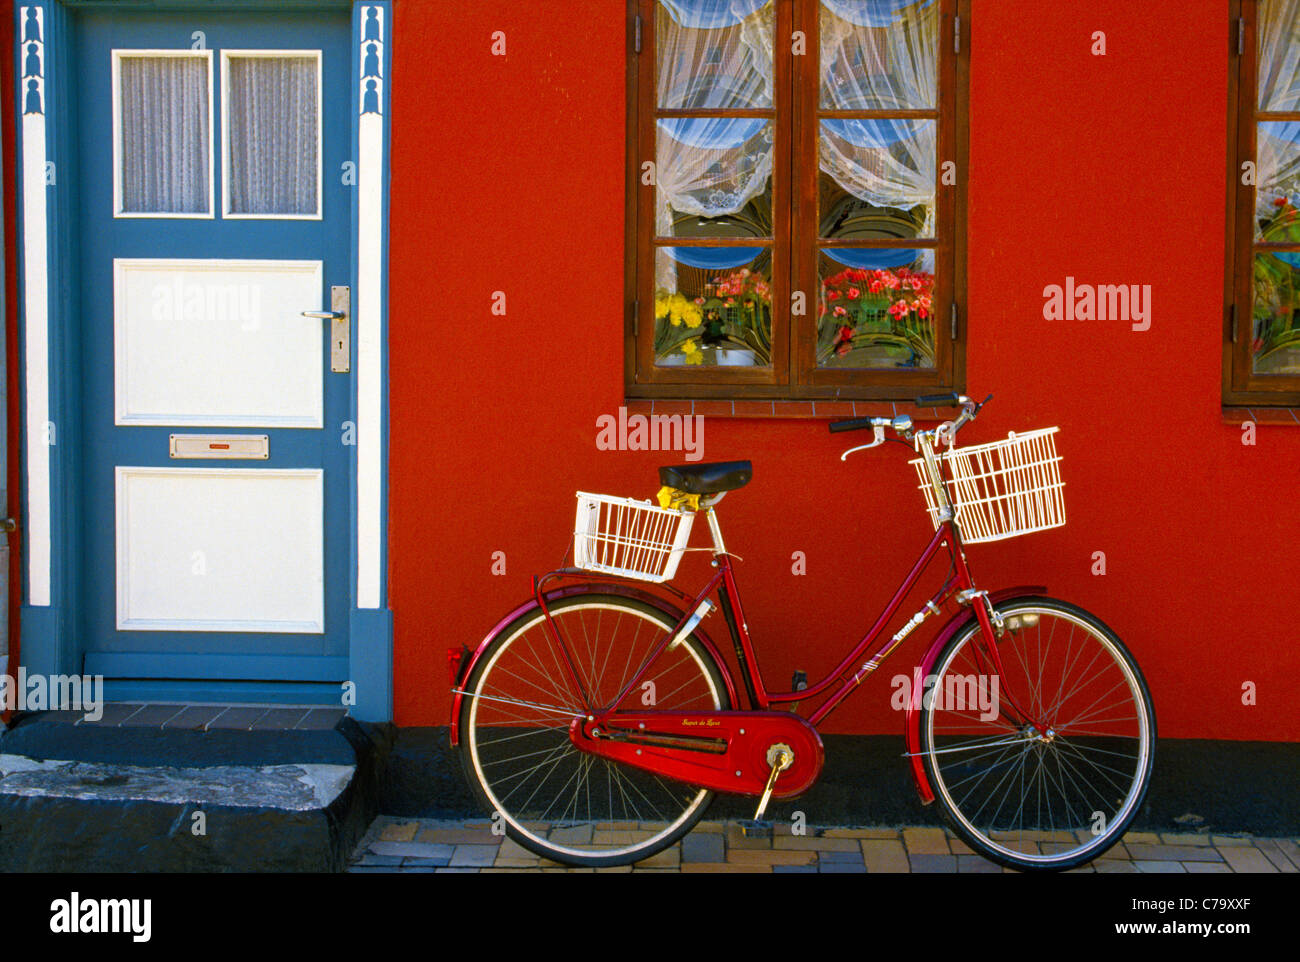 über. Ein rotes Fahrrad vor einer roten Wand geparkt und eine blau-weiße Tür eines Hauses macht eine bunte Straße Tableau in Kerteminde, Dänemark. Stockfoto